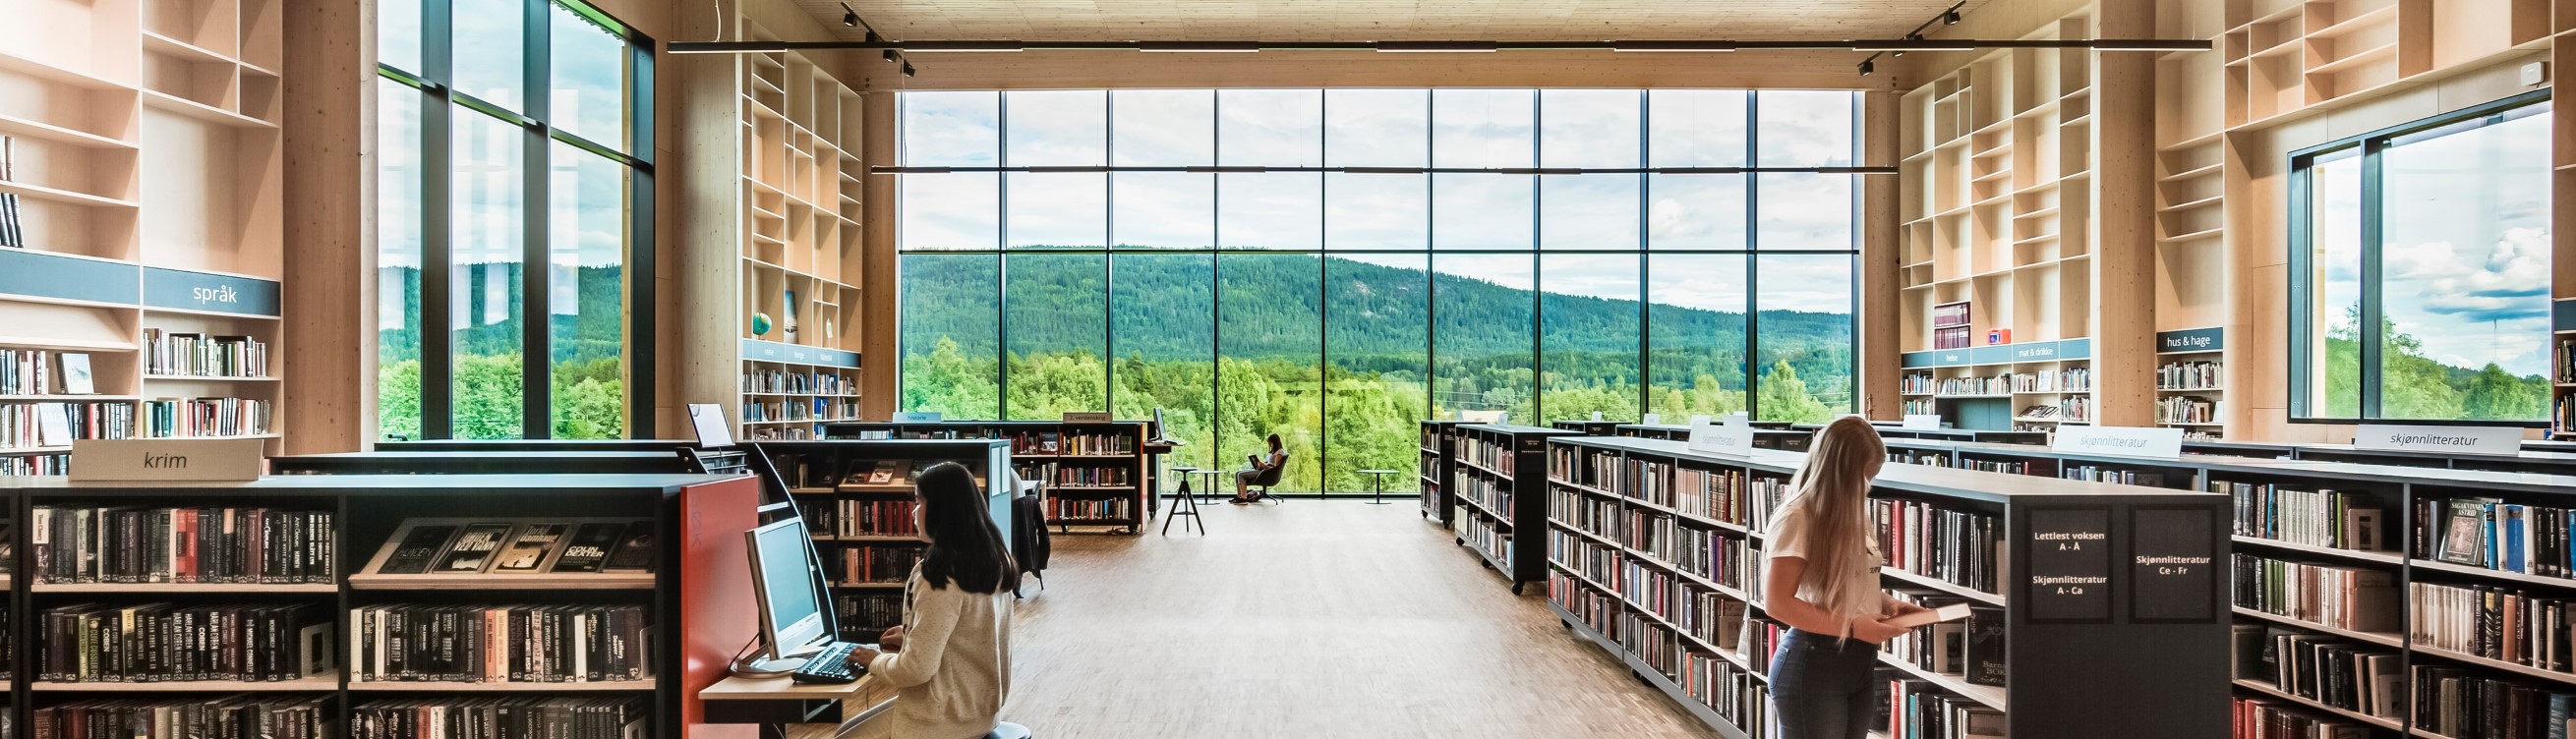 Bir kütüphanede SAPA alüminyum giydirme cephe ve pencereler, odaya, kitaplara ve ötesindeki manzaraya ışık getiriyor